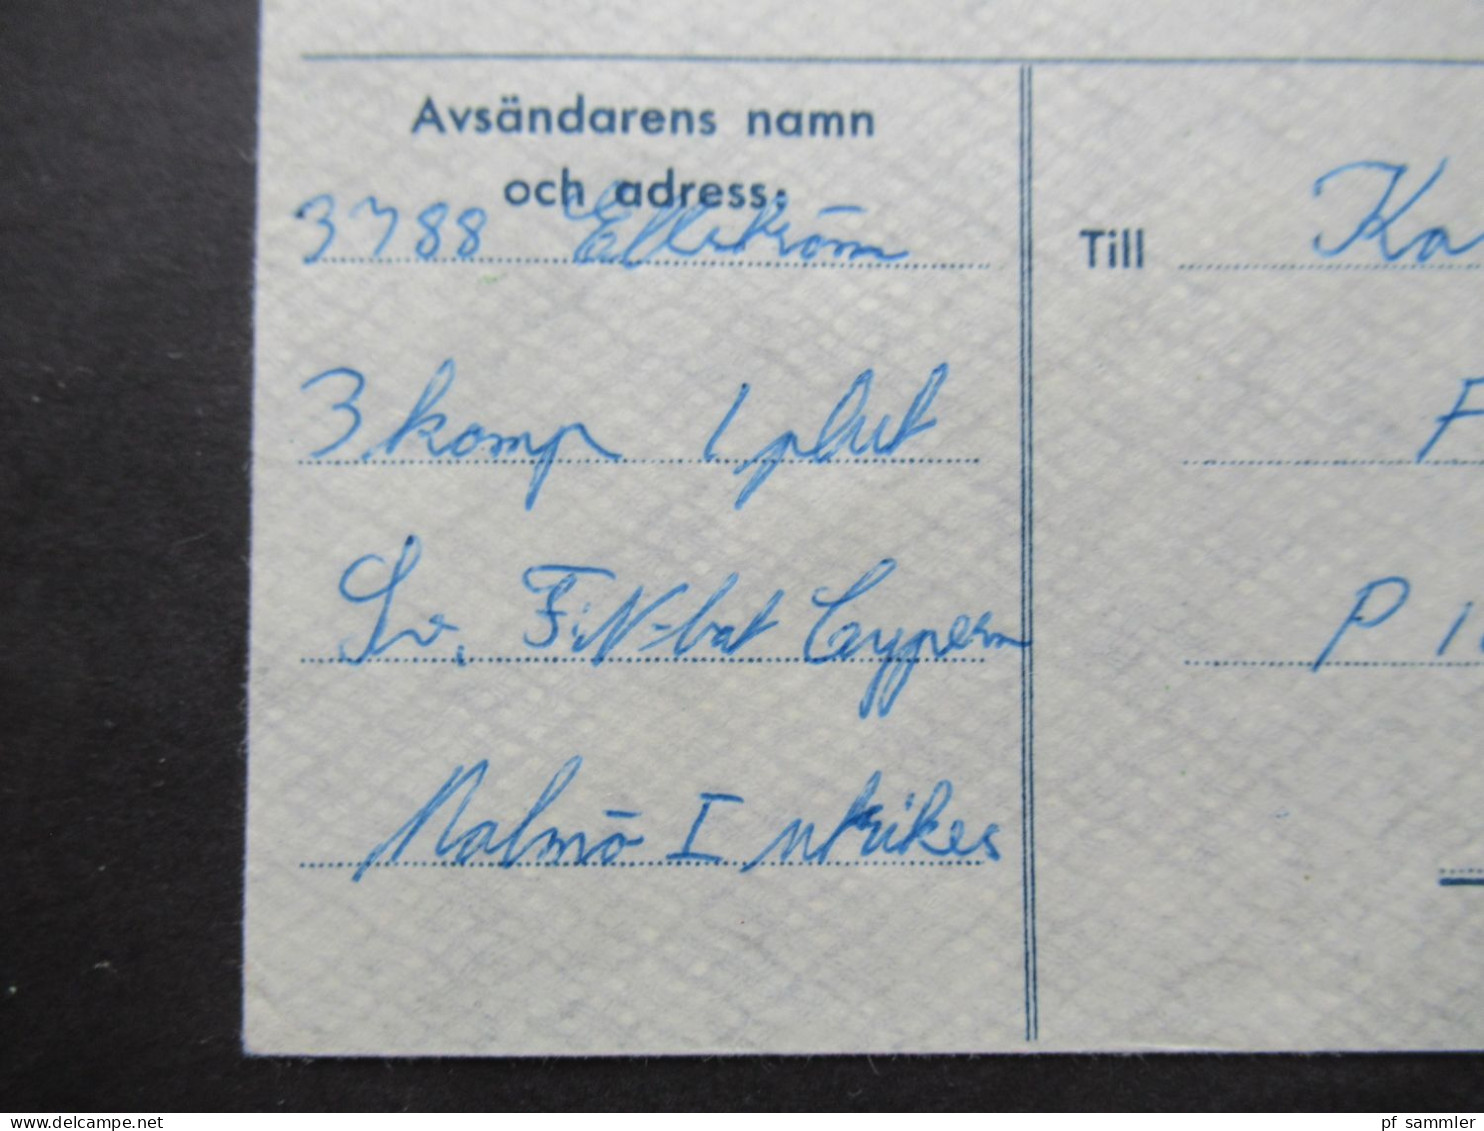 1965 Schweden Militärpost Militärbrev Stempel Svenska FN Bat Cypern / Schwedisches Militär Auf Zypern / FN Bat 3. Komp - Militaire Zegels